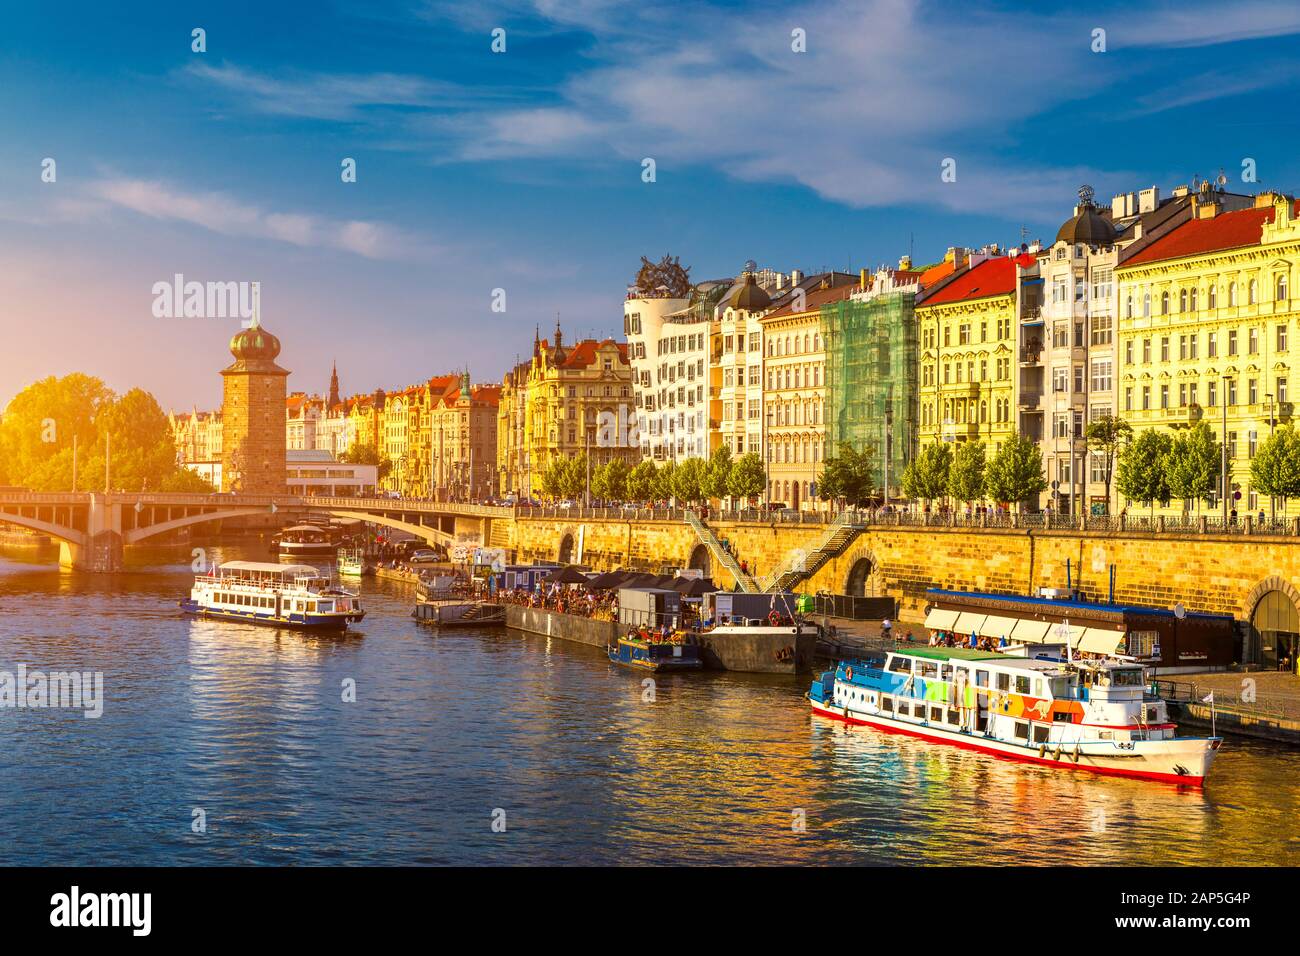 Malerische Ufer in Prag, die Stadt, das historische Zentrum von Prag, Gebäude und Wahrzeichen der Altstadt, Prag, Tschechische Republik Stockfoto